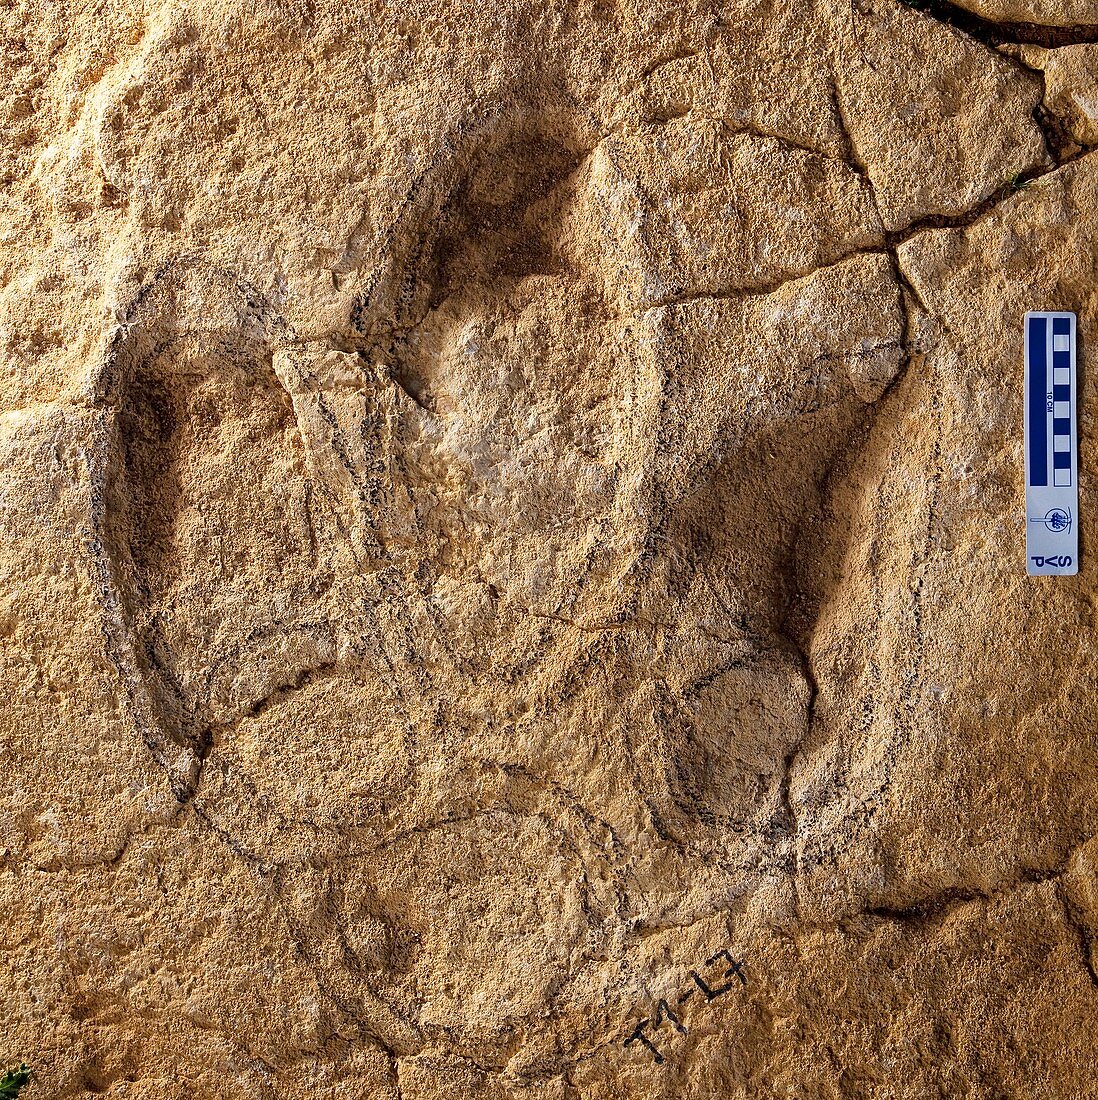 Fossil dinosaur footprint